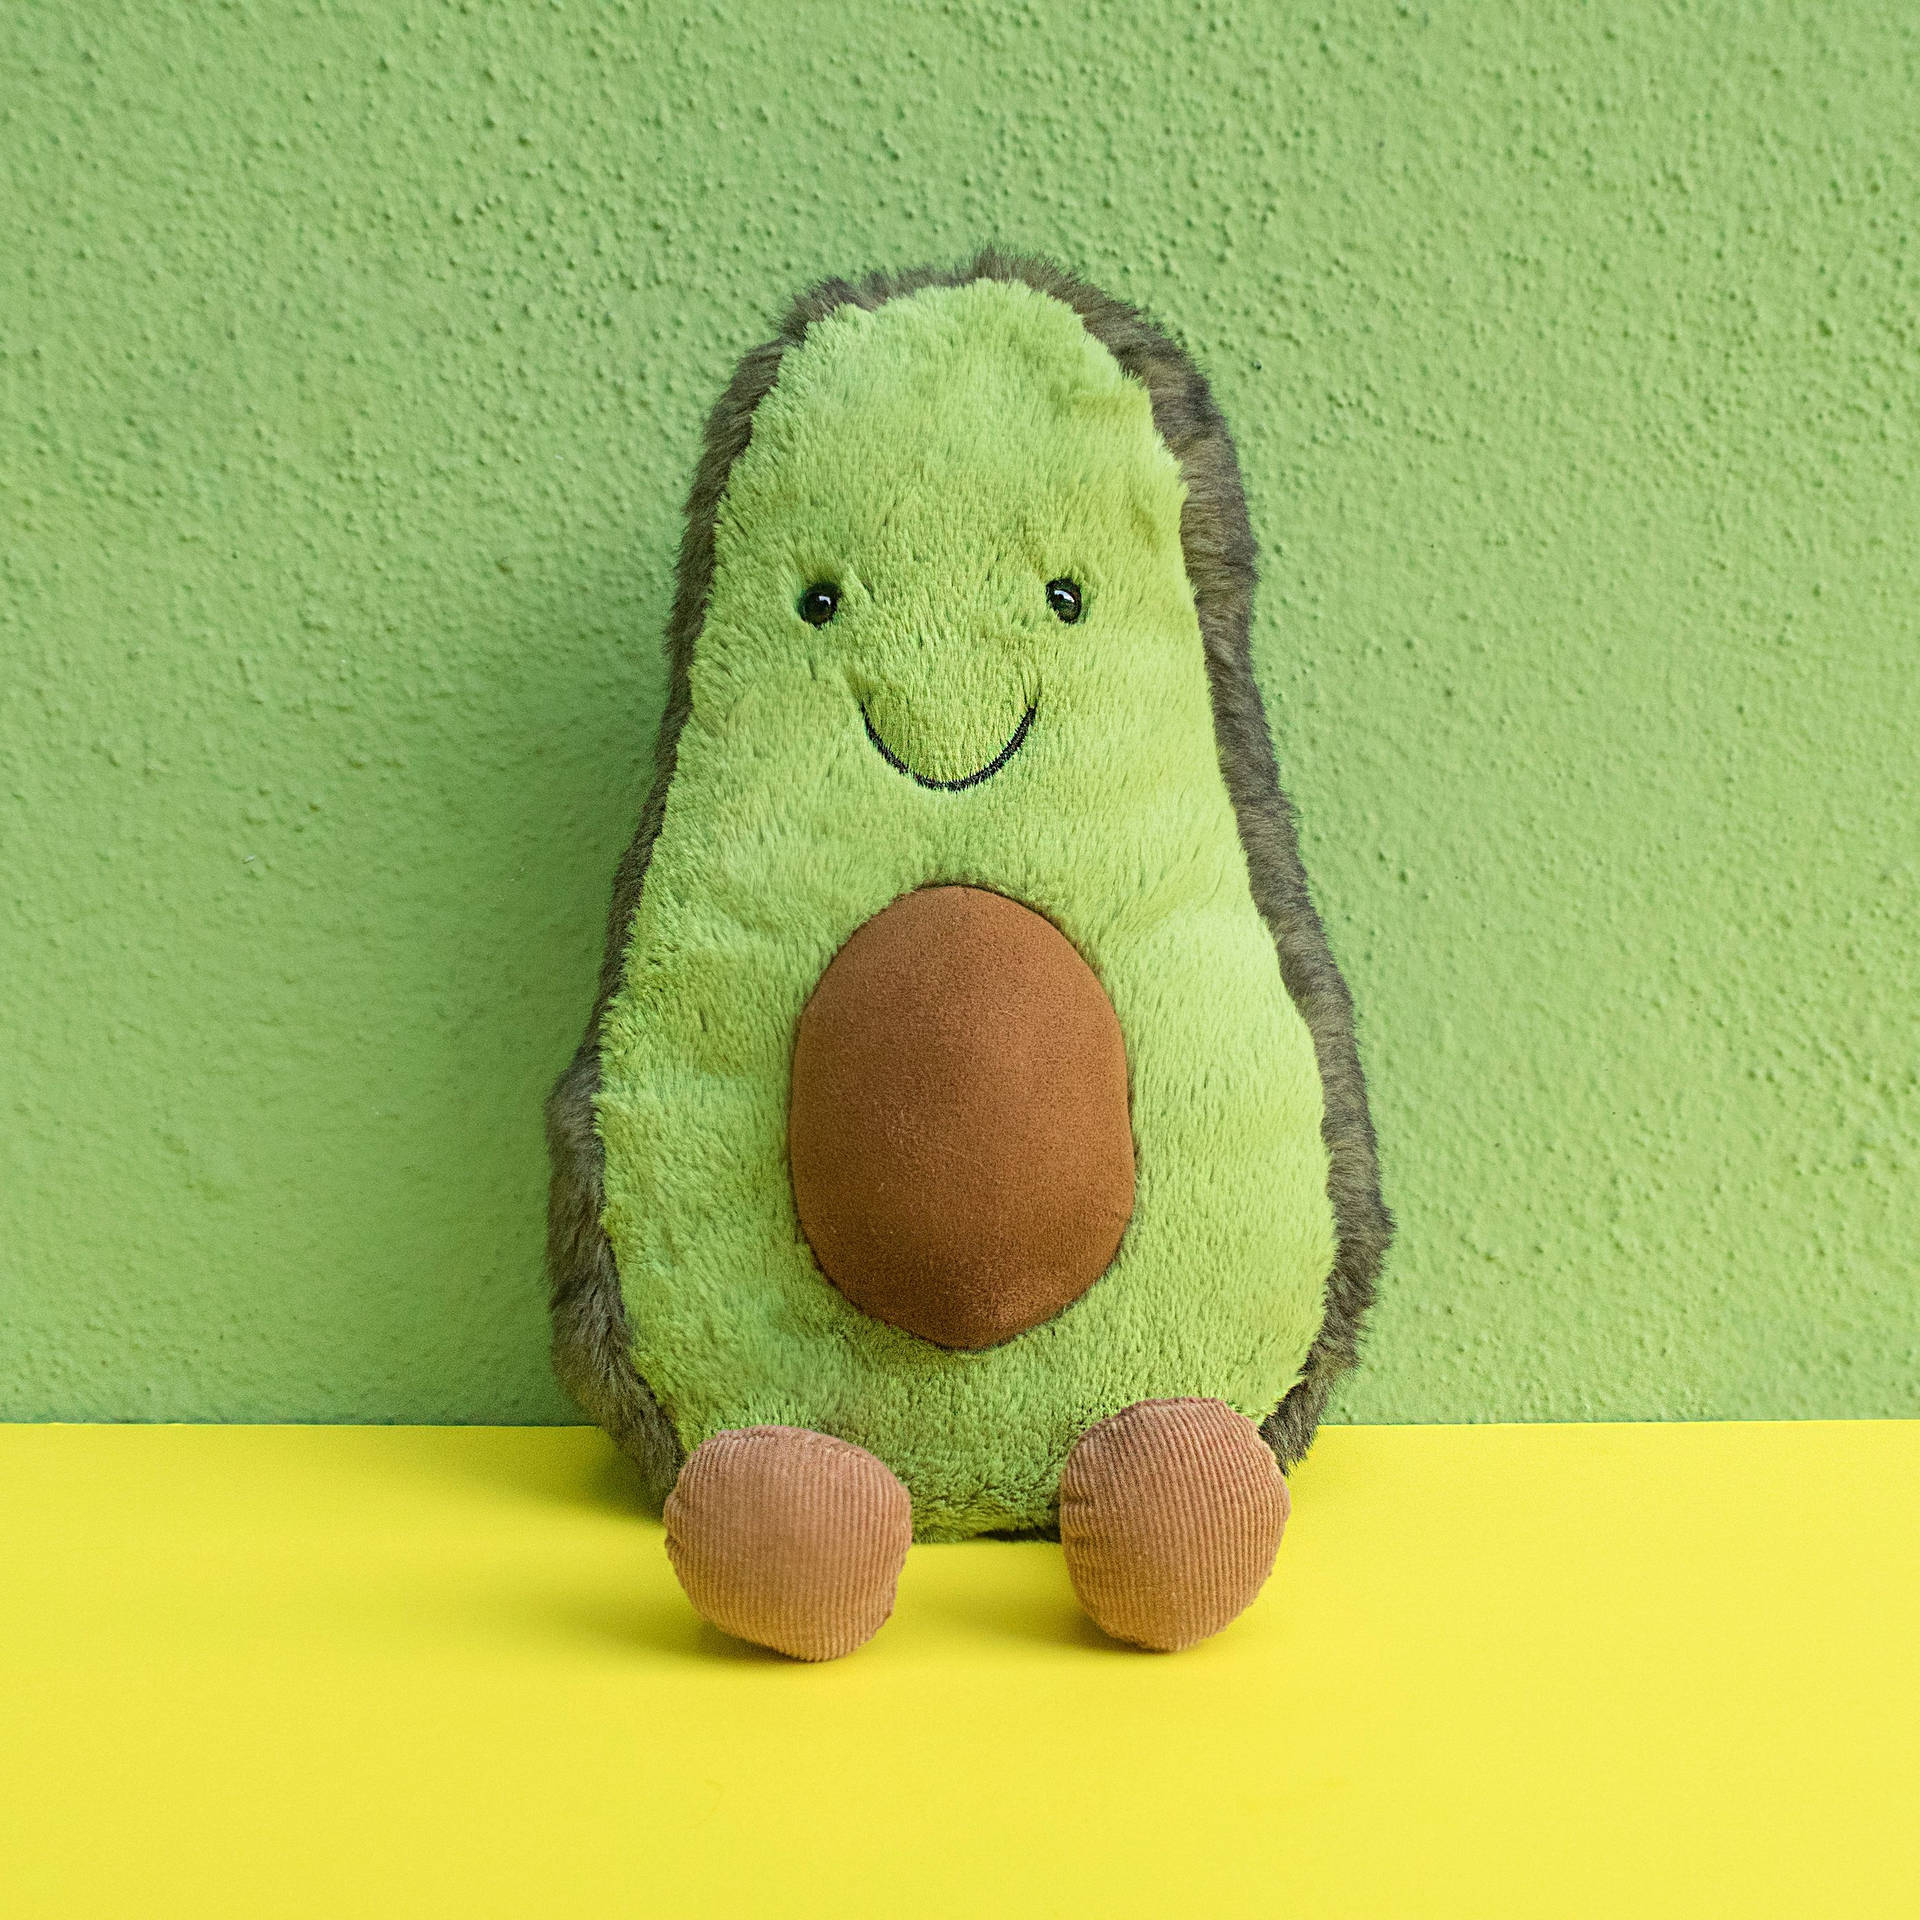 Ipad Pro Cute Avocado Toy